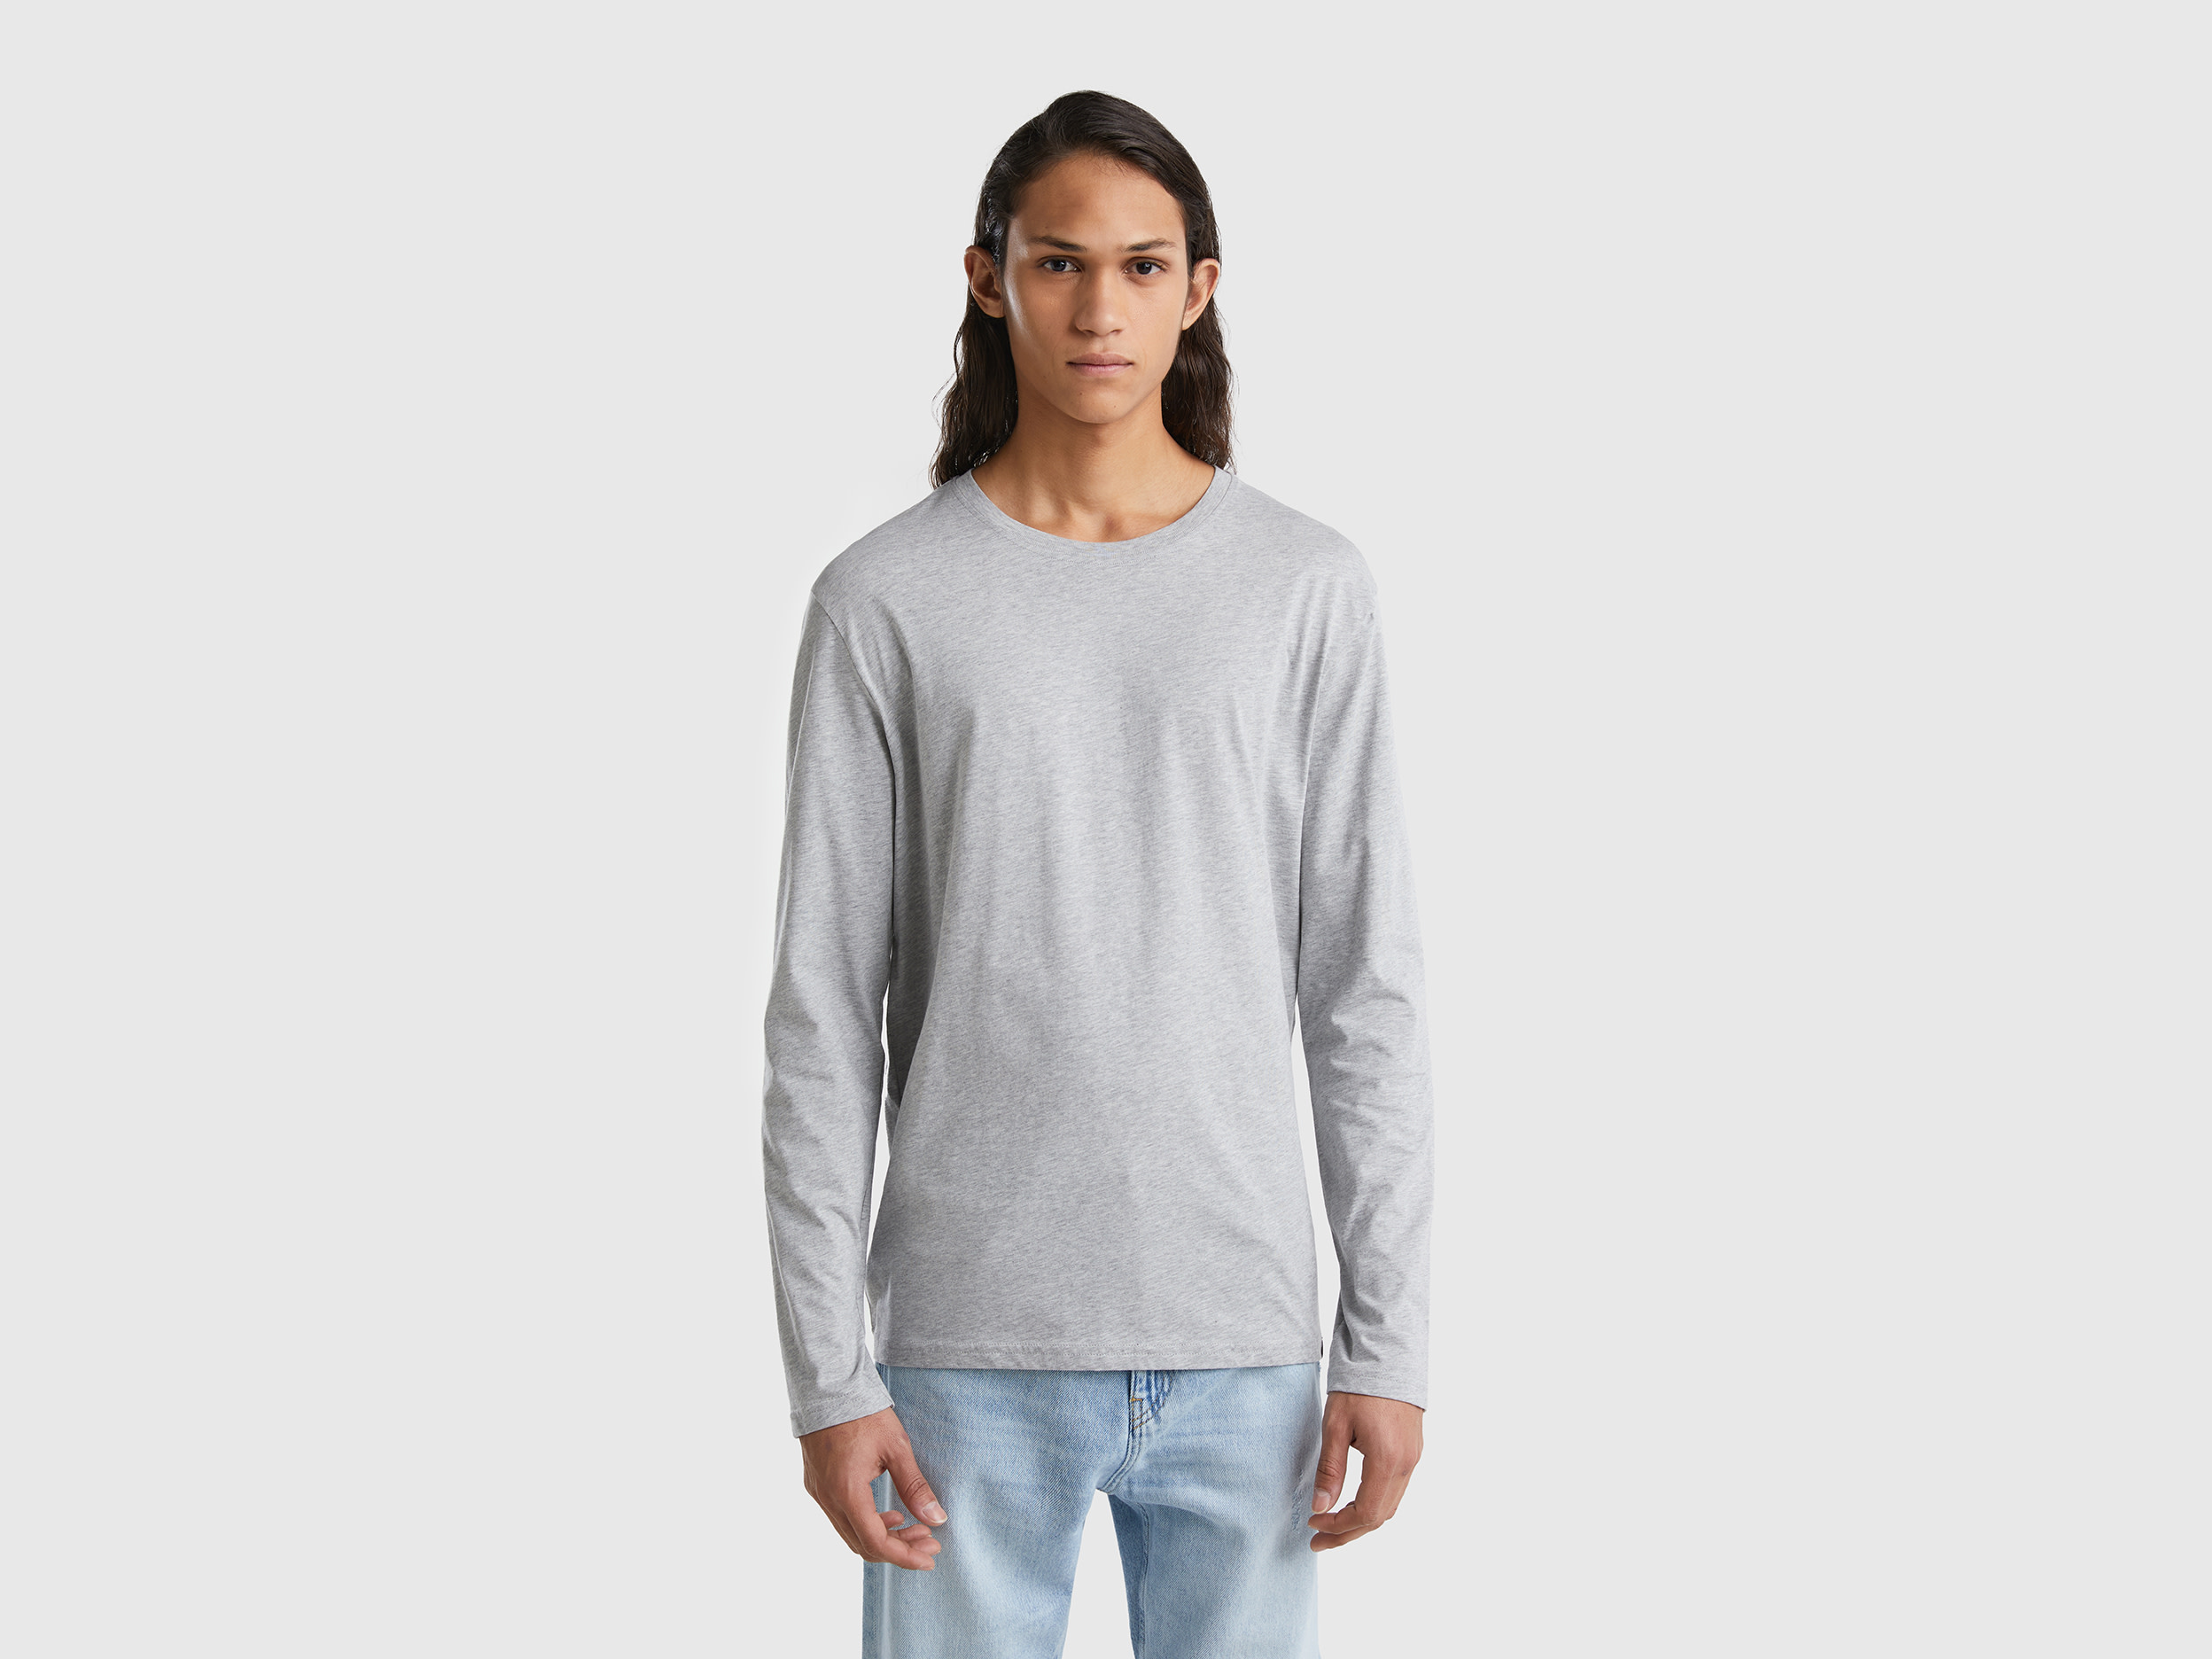 Benetton, Long Sleeve Pure Cotton T-shirt, size XXL, Light Gray, Men